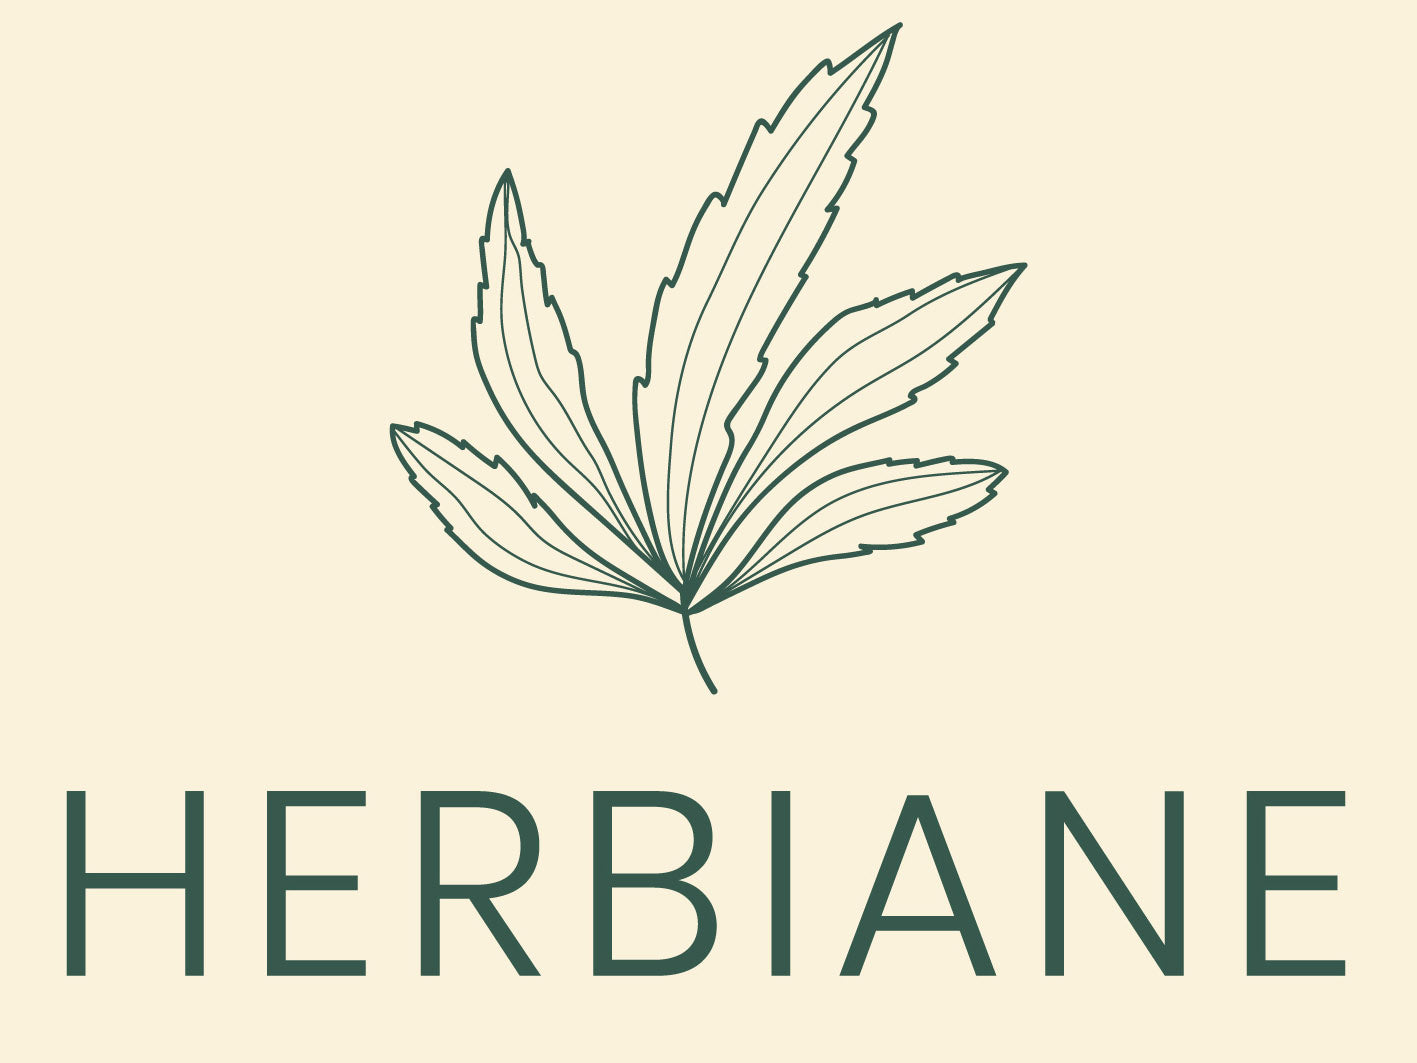 Herbiane